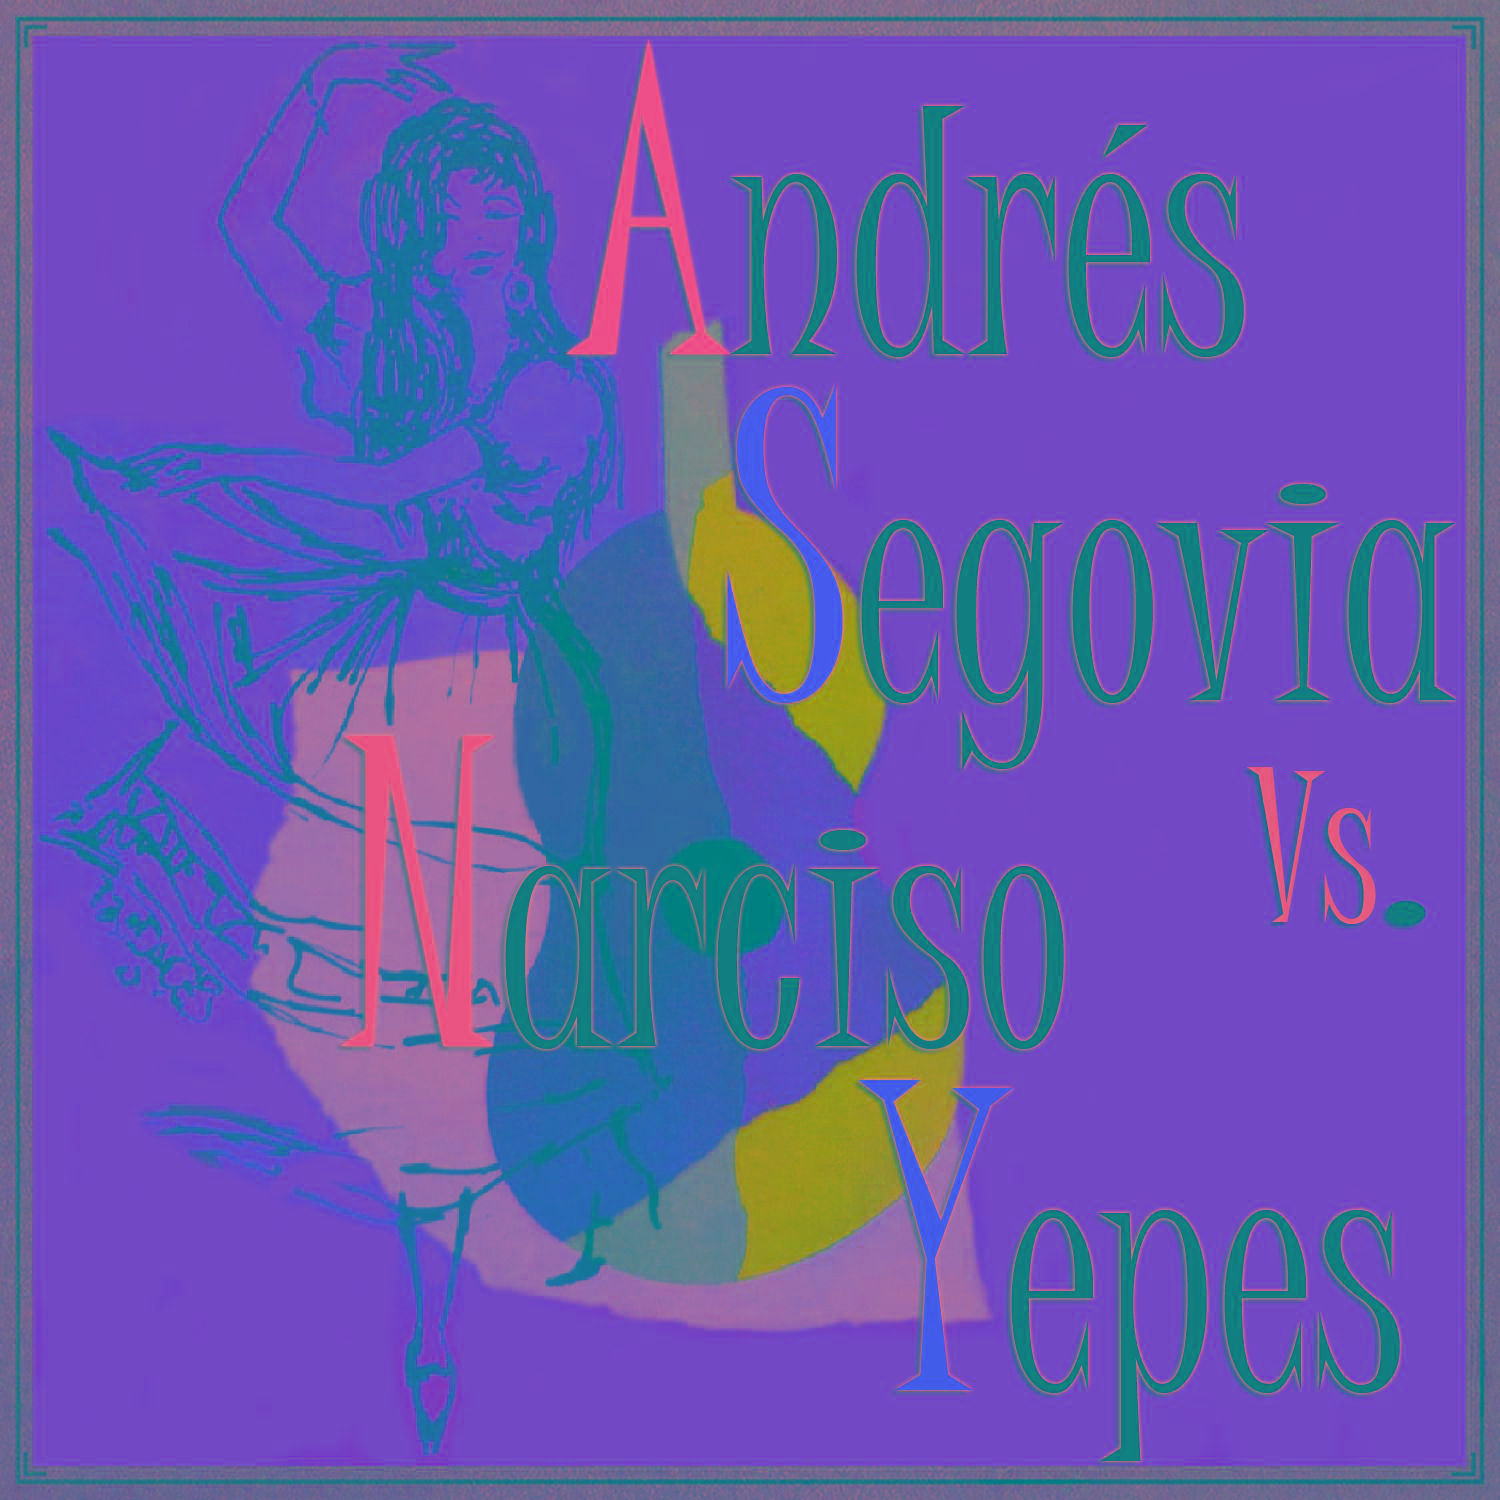 Andre s Segovia vs. Narciso Yepes